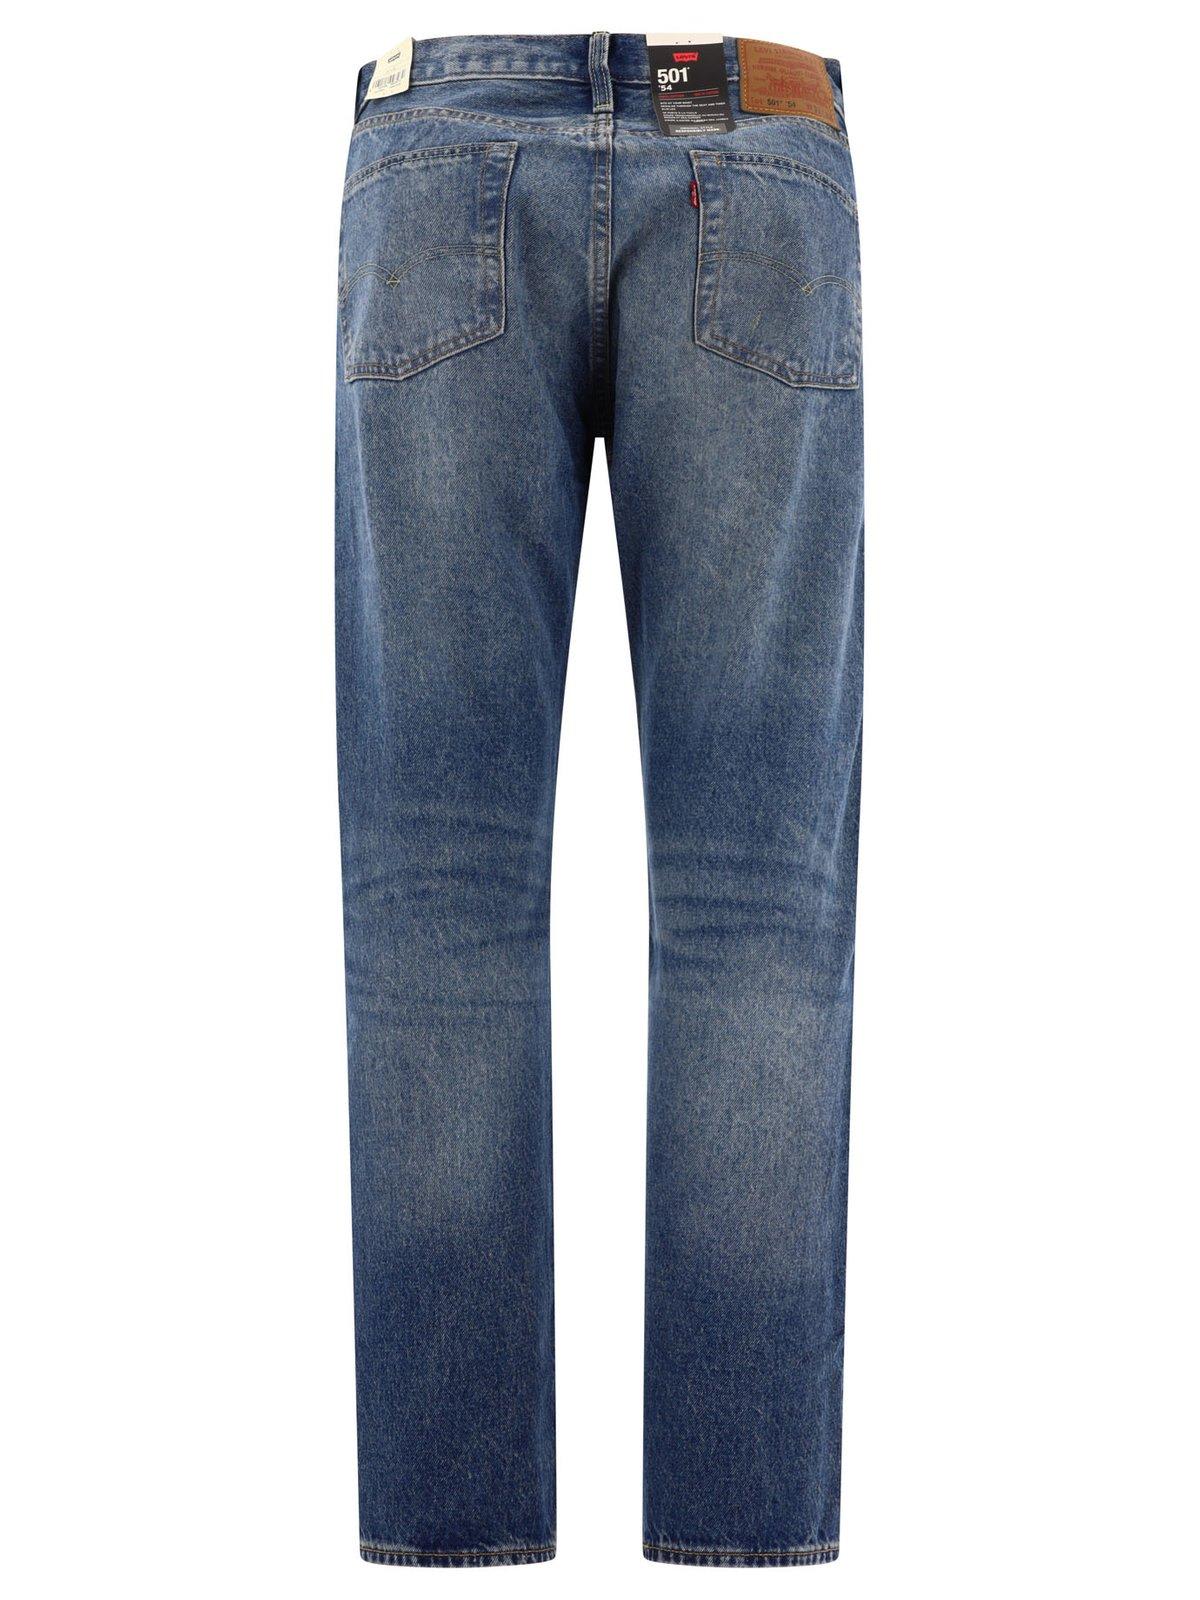 Shop Levi's 501 54 Mid Rise Denim Jeans